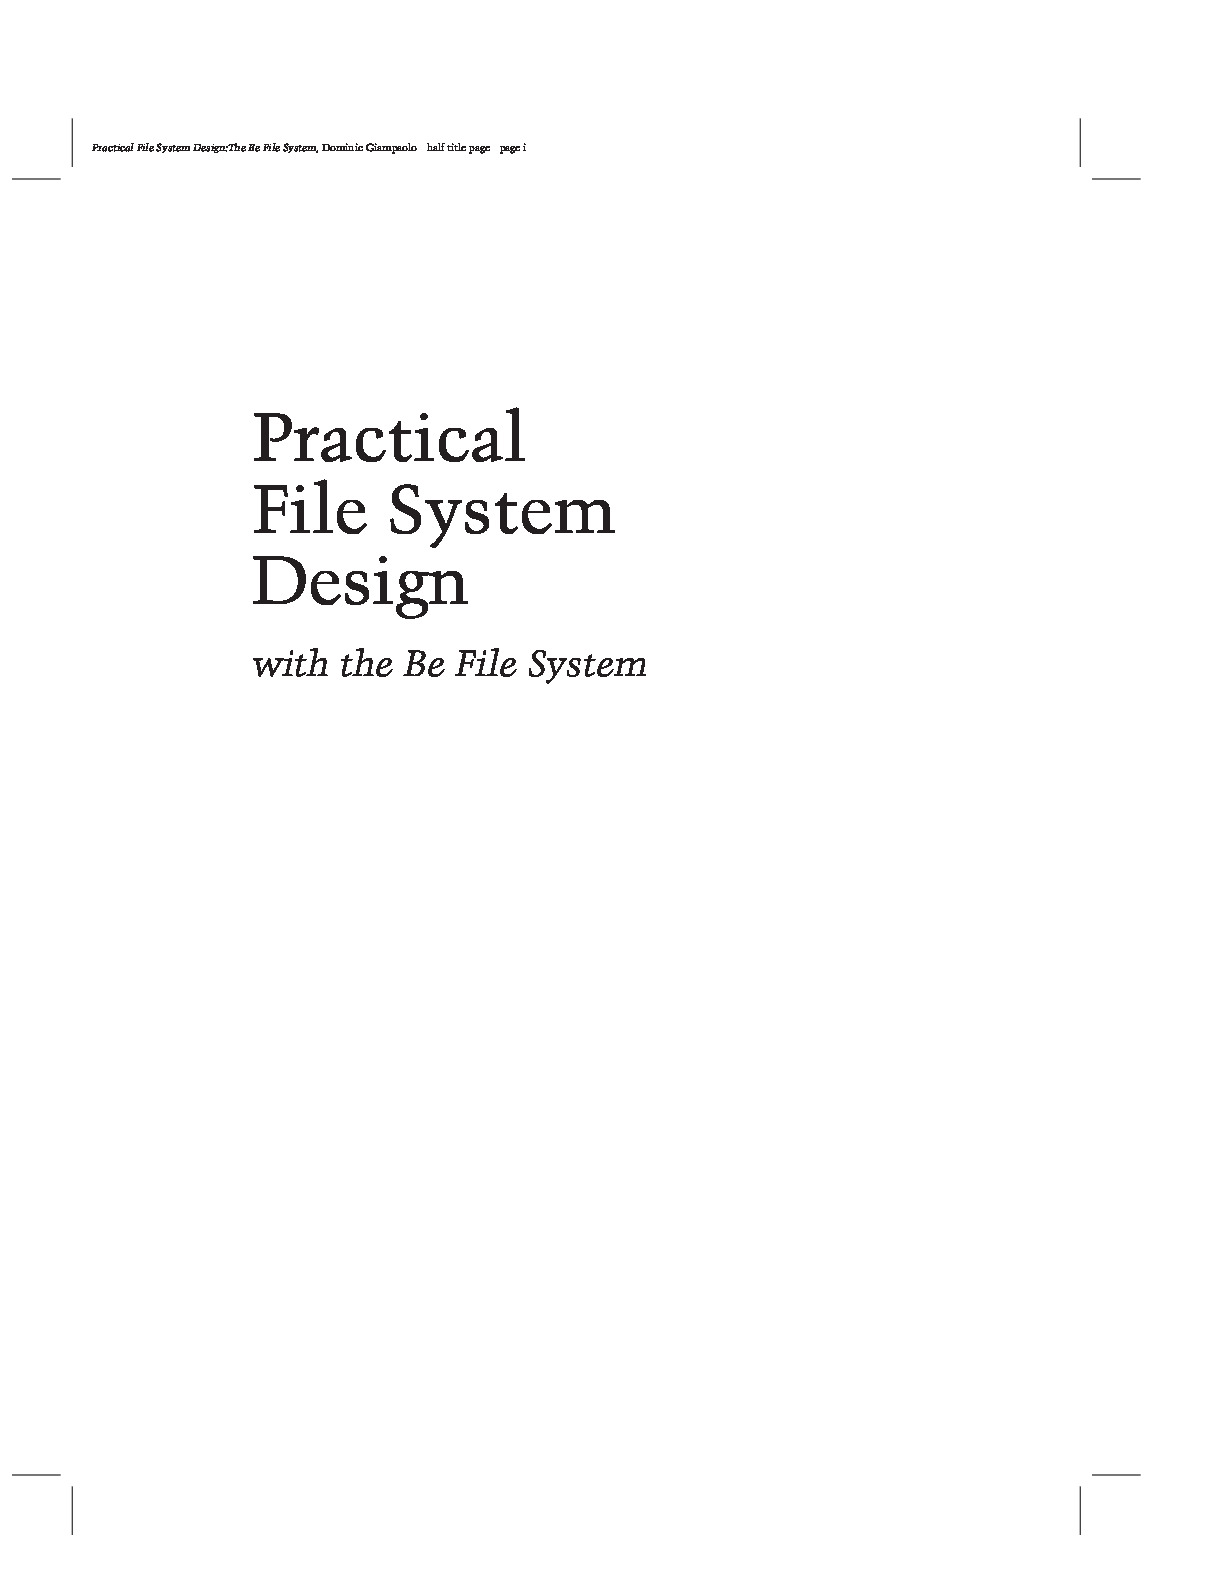 practical-file-system-design